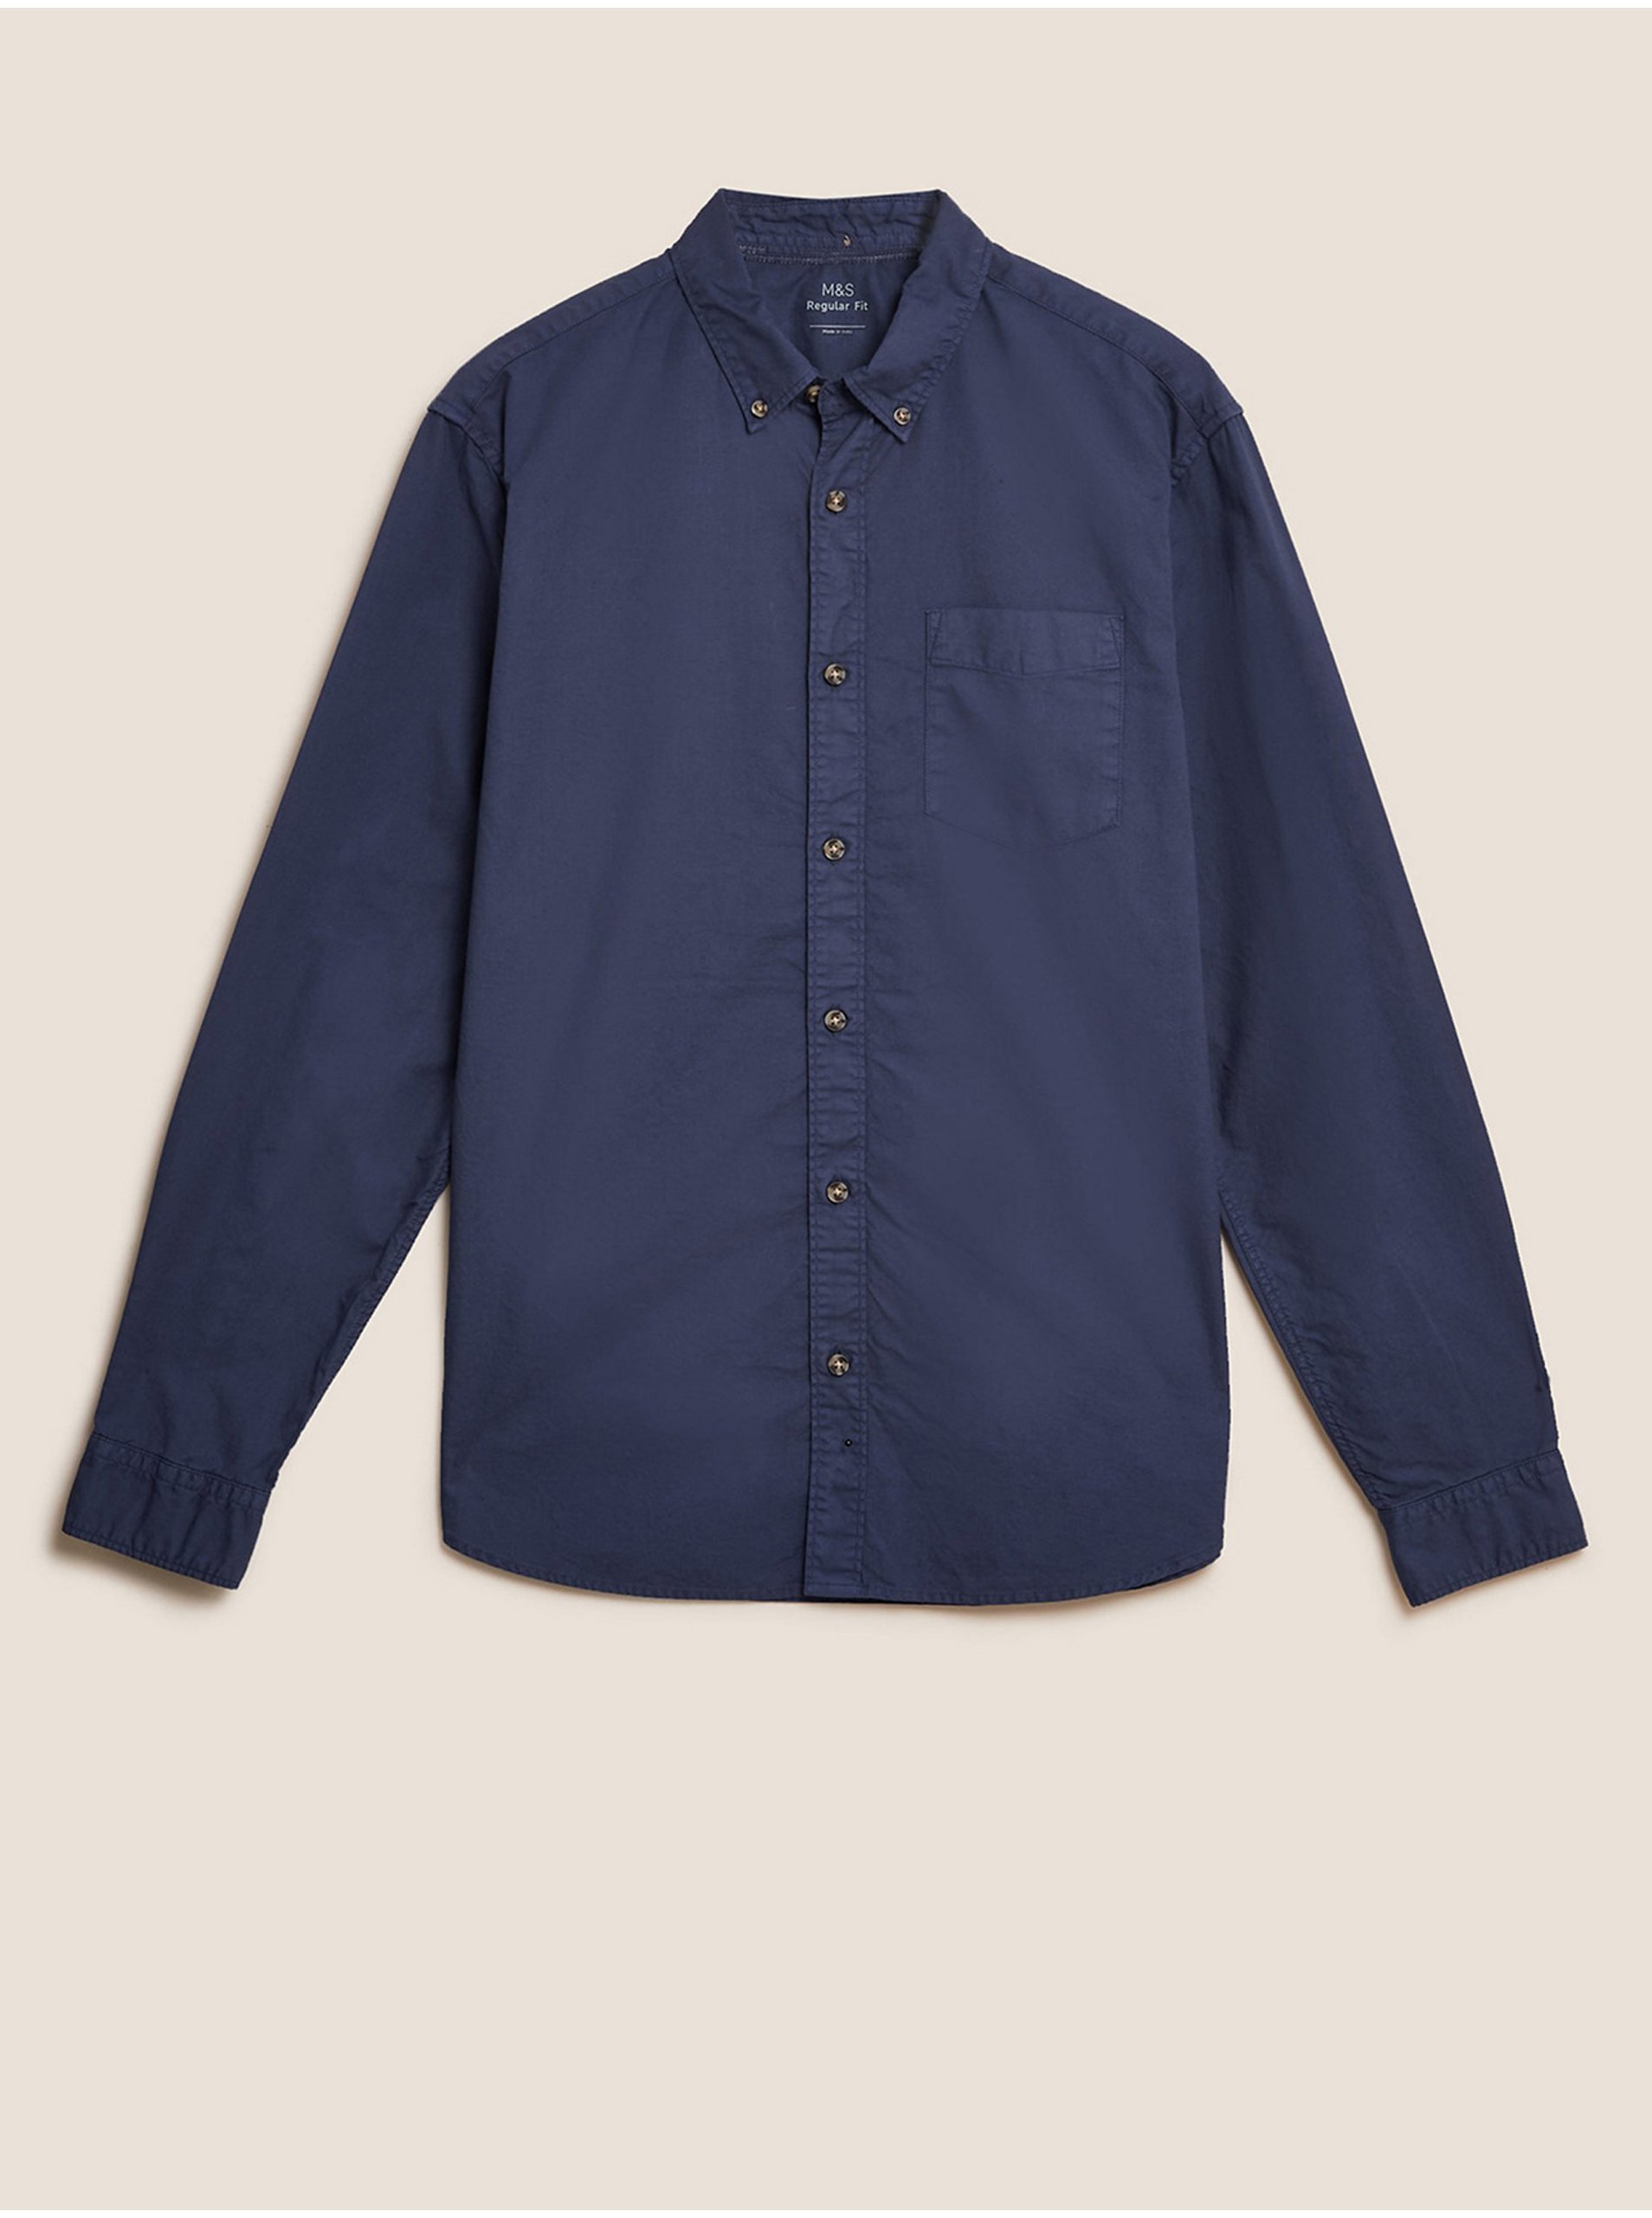 E-shop Barvená košile Oxford z čisté bavlny Marks & Spencer námořnická modrá